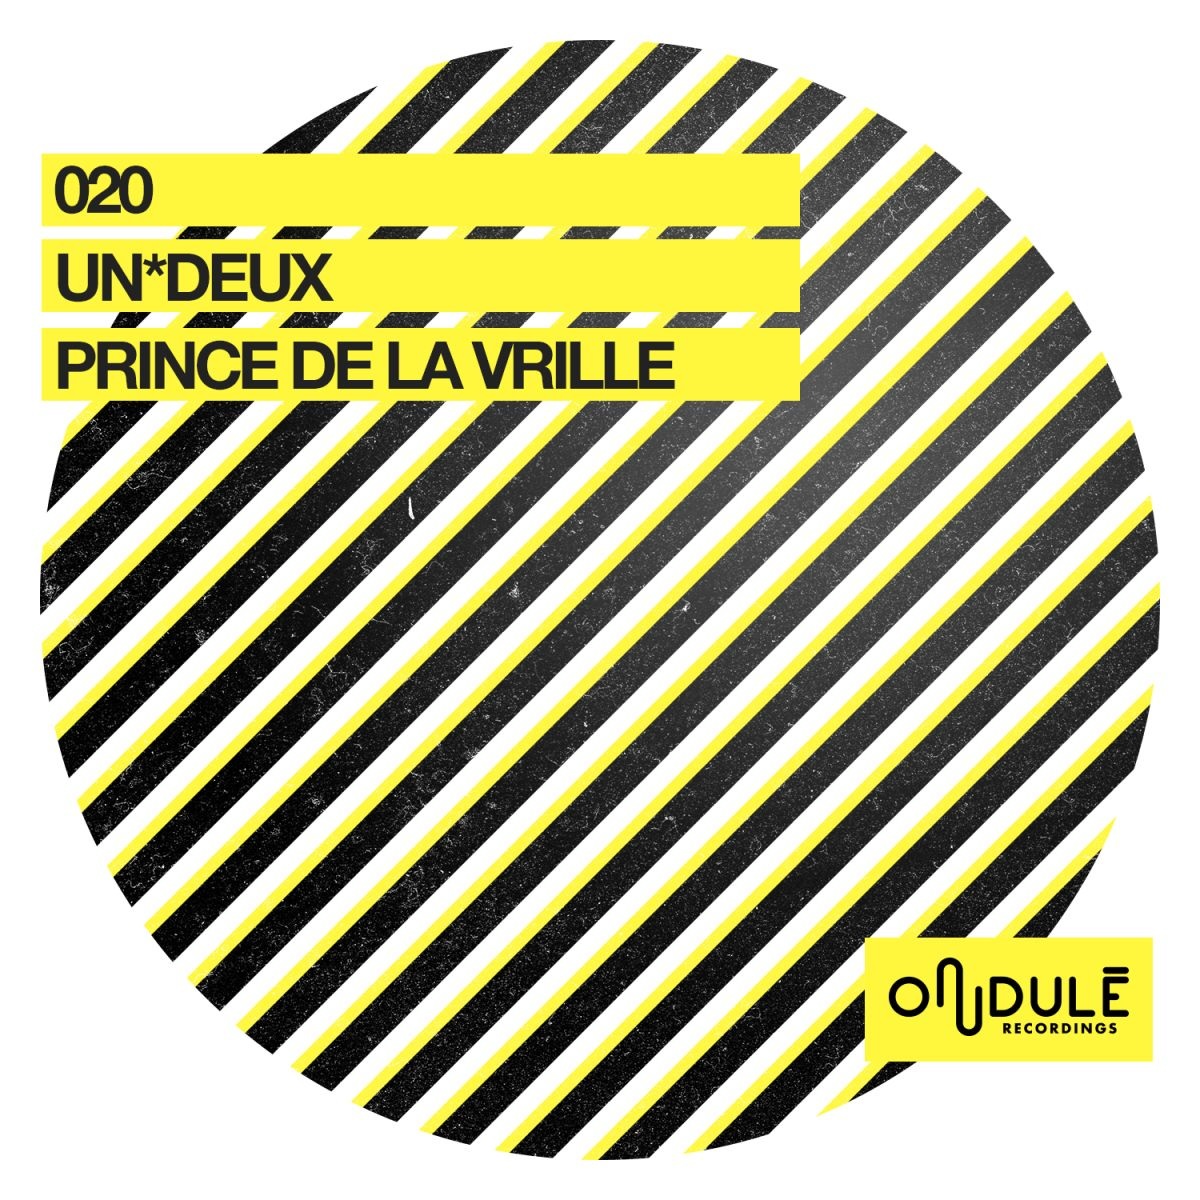 UN*DEUX - Prince de la vrille / Ondulé Recordings